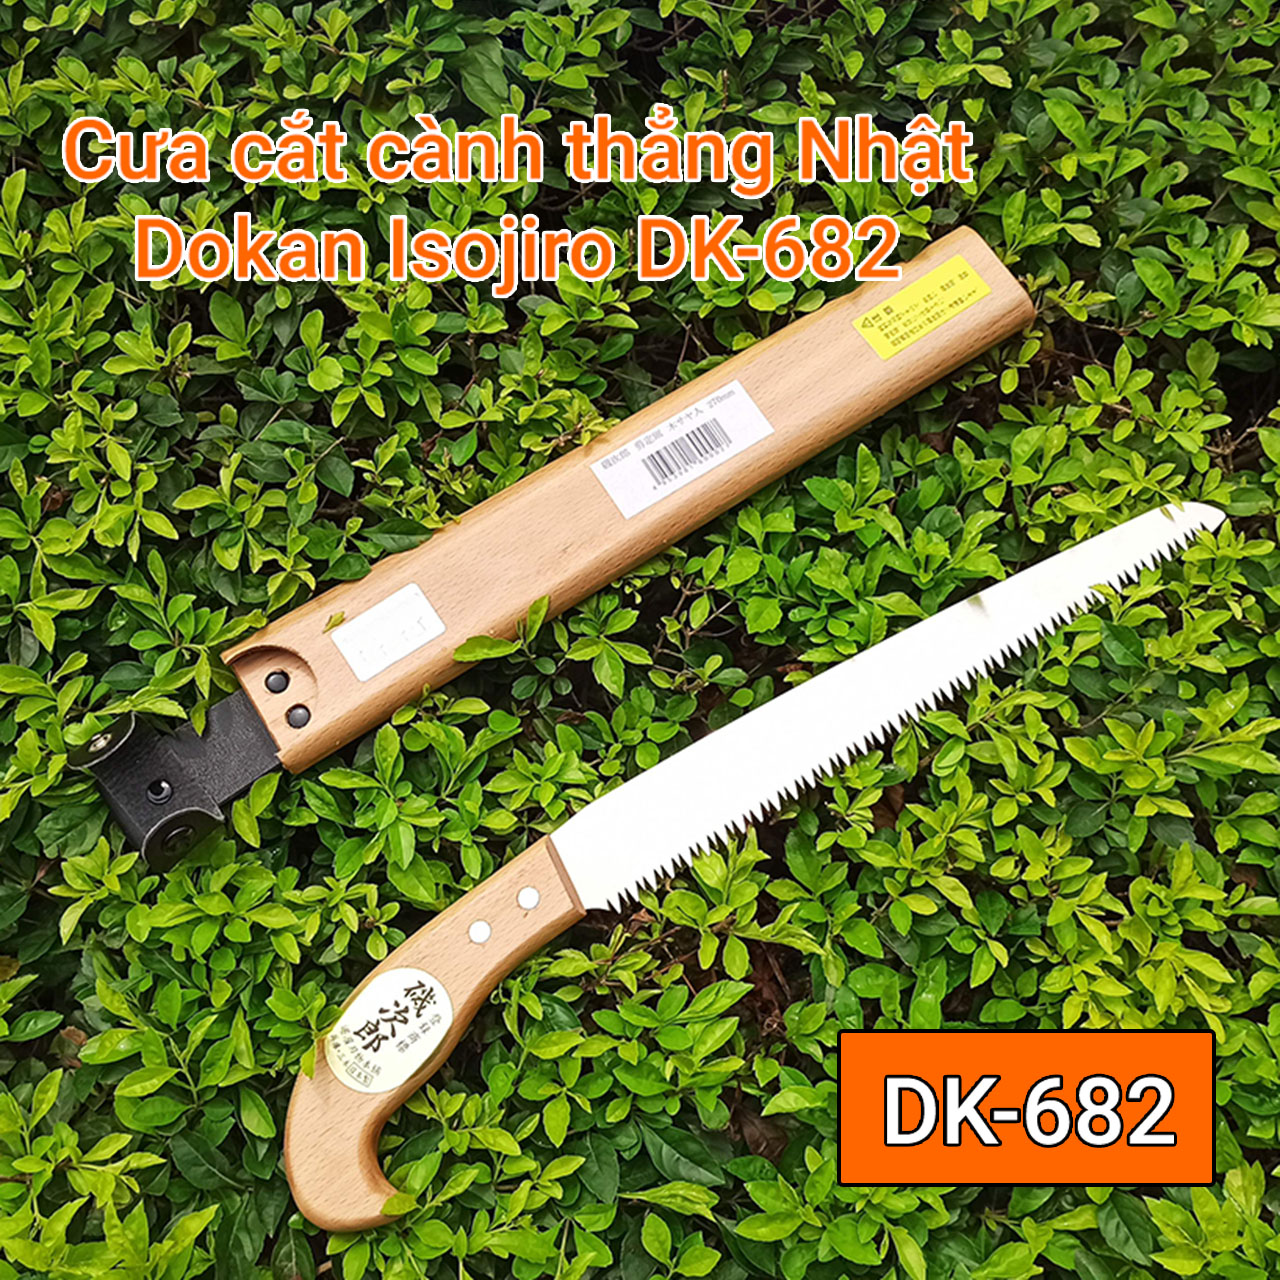 Cưa gỗ cầm tay - Cưa cắt cành cây Nhật Bản Dokan Isojiro DK-682 - 270mm, DK